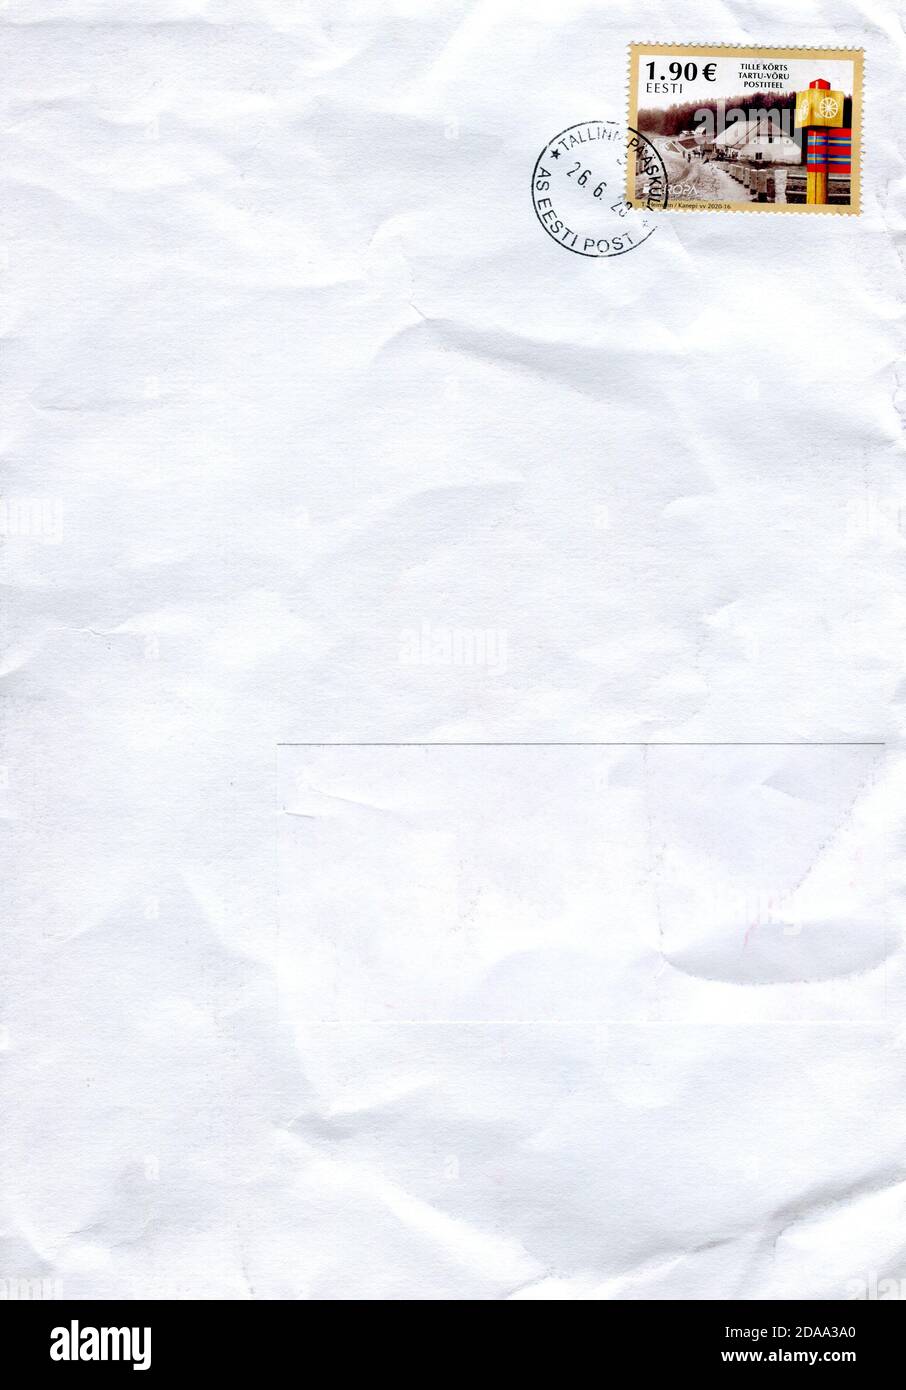 GOMEL, BÉLARUS - 11 NOVEMBRE 2020 : ancienne enveloppe envoyée de l'Estonie à Gomel, Bélarus, 26 juin 2020. Banque D'Images